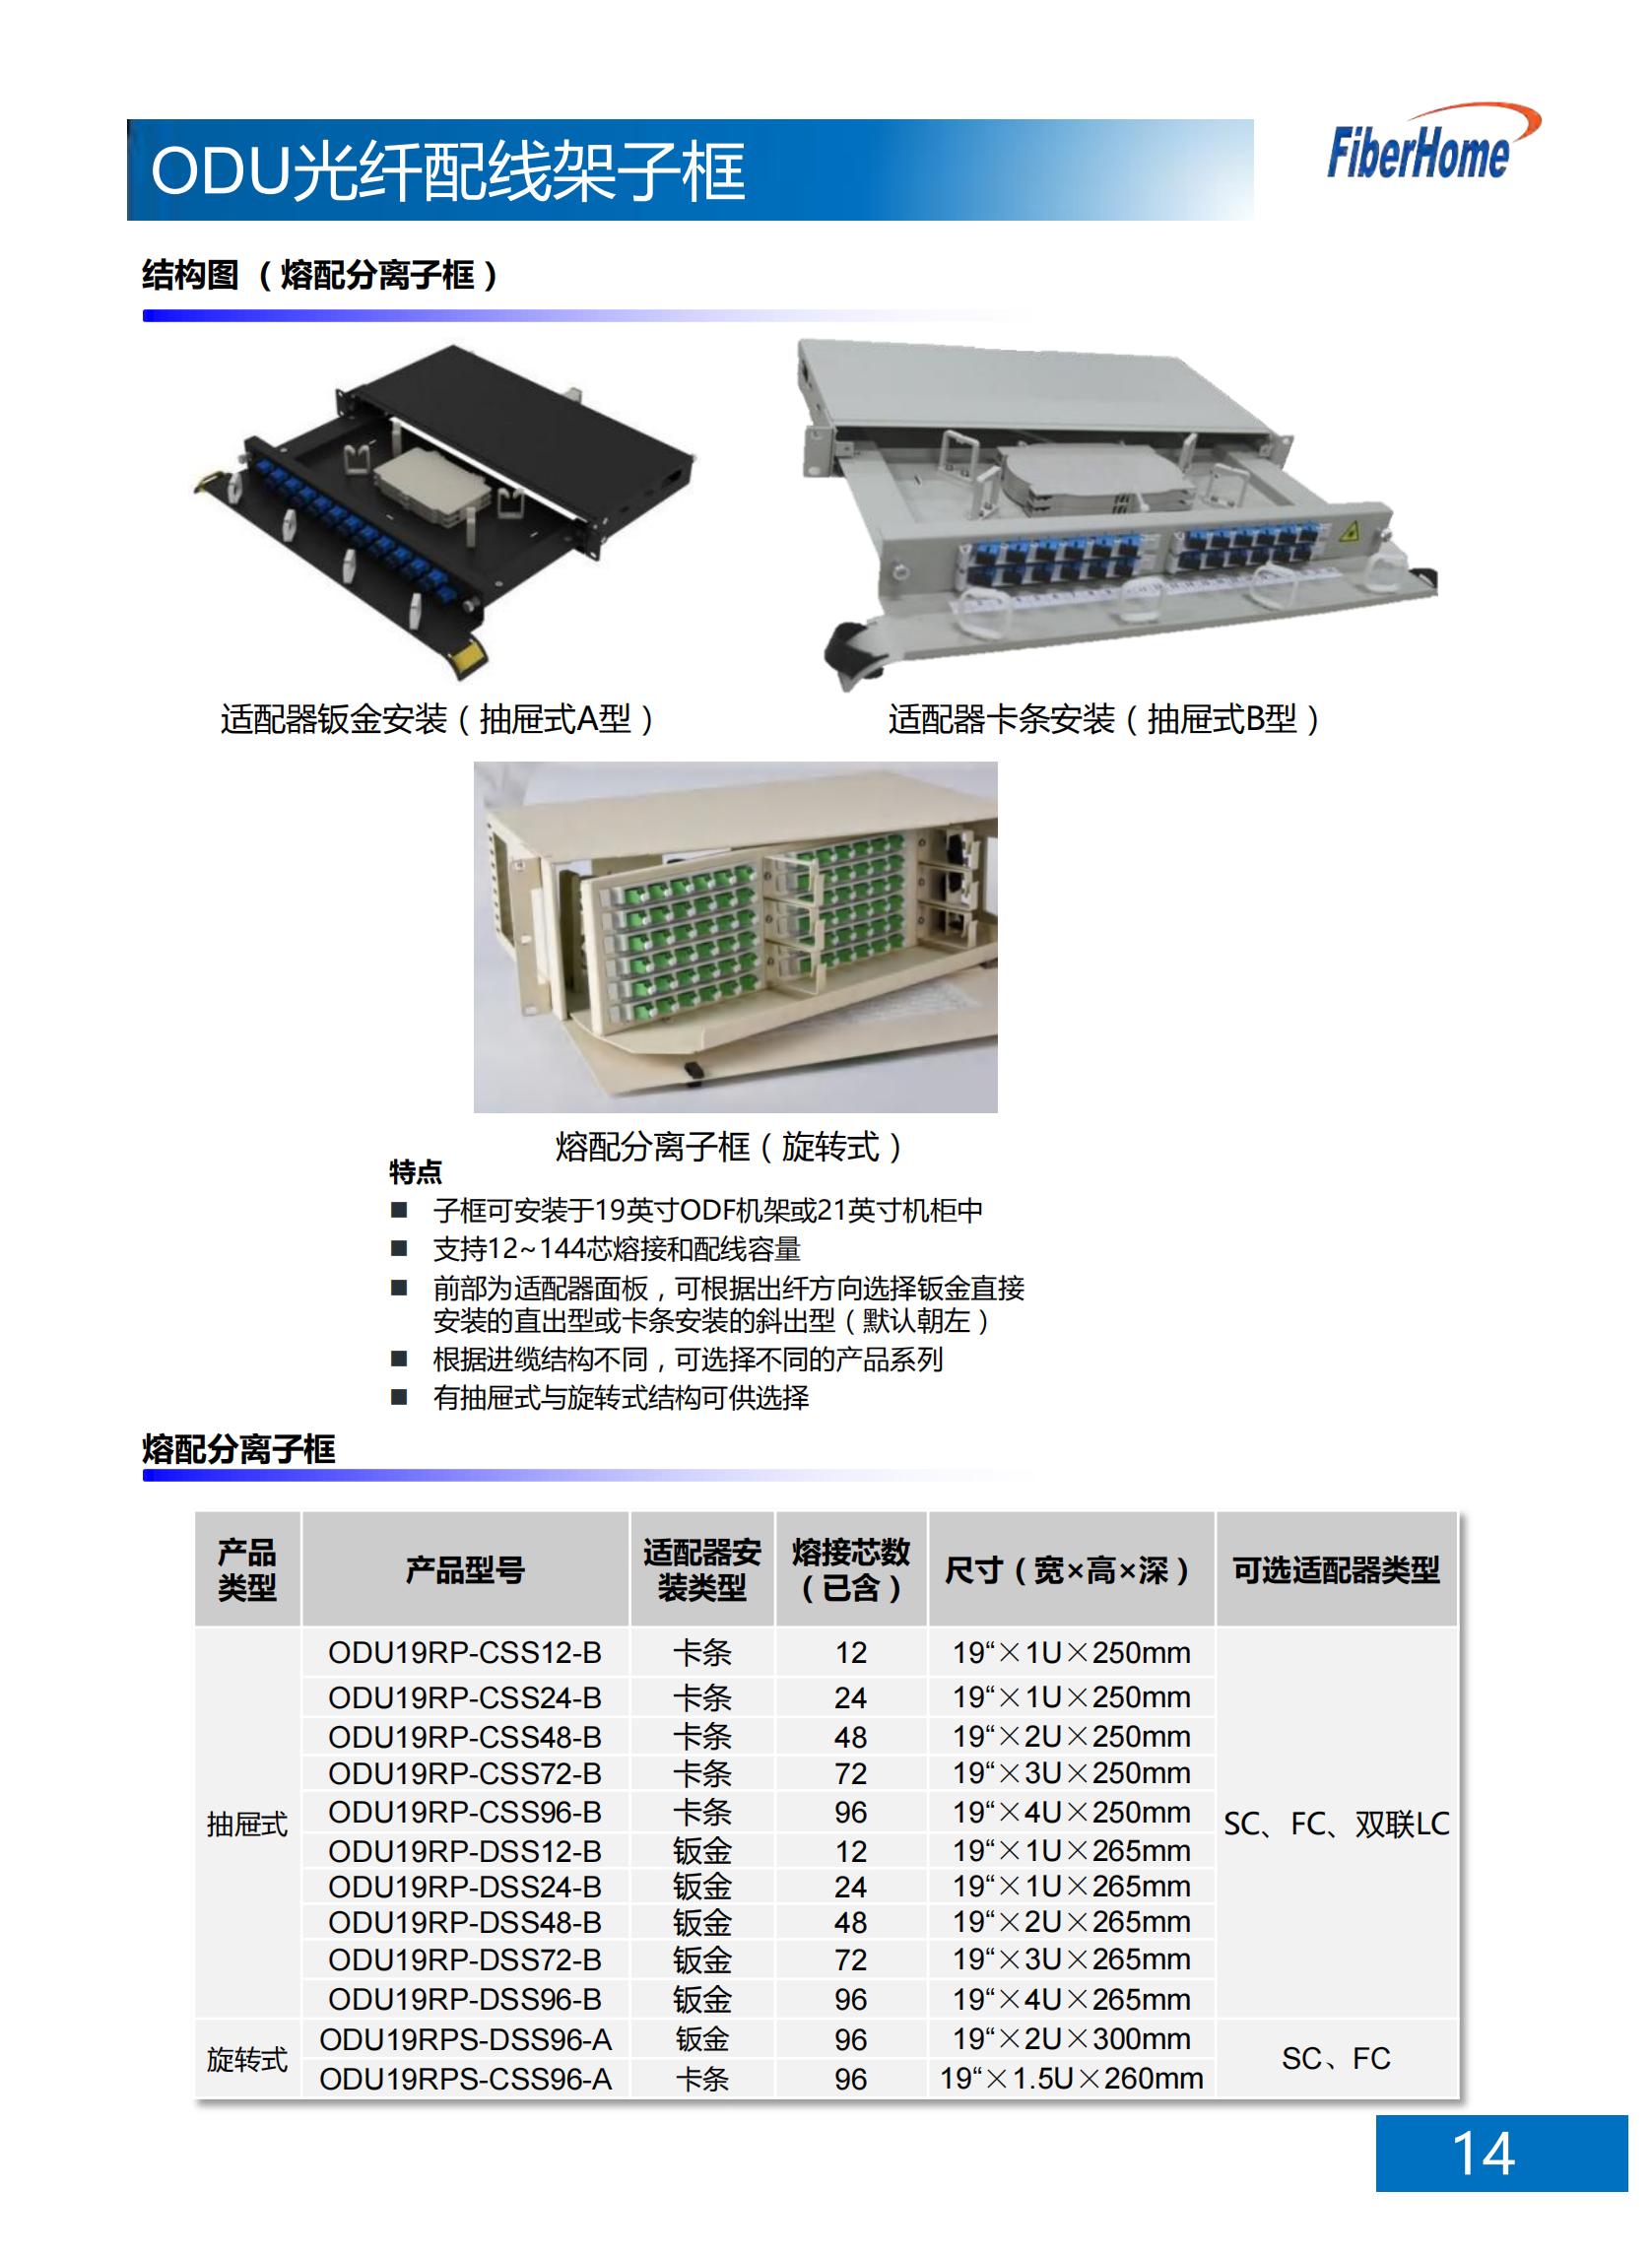 48芯 ODU光纤配线架子框 ODU19T-A48-B-FC （含12芯FC熔配一体化单元*4）